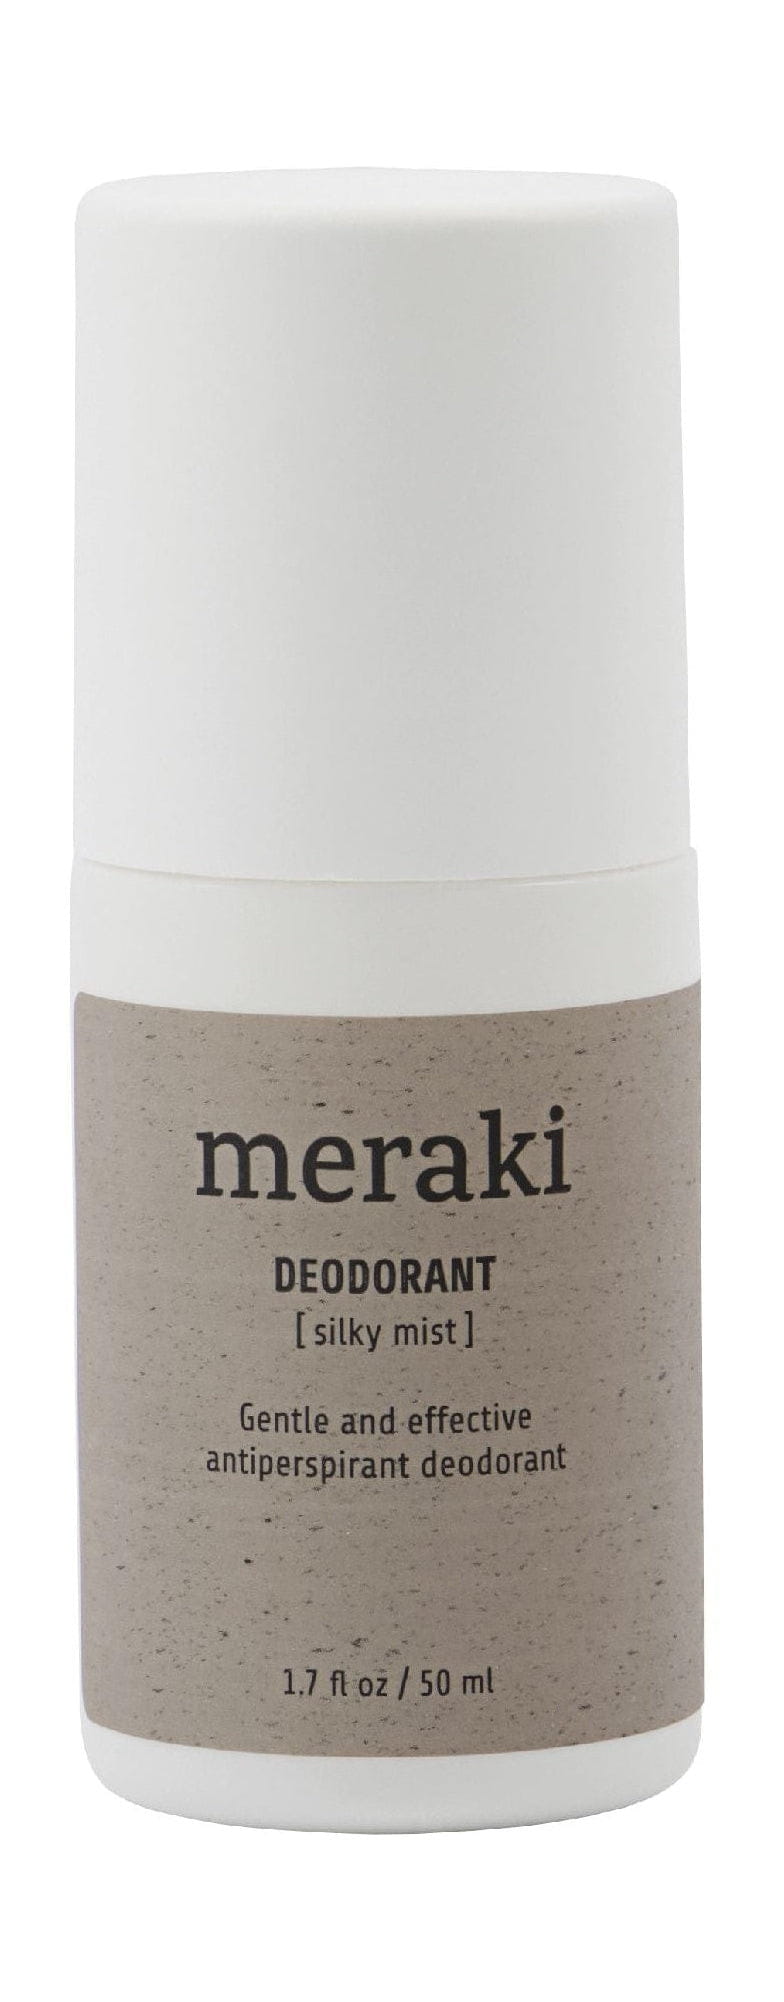 Meraki deodorant 50 ml, hedvábná mlha